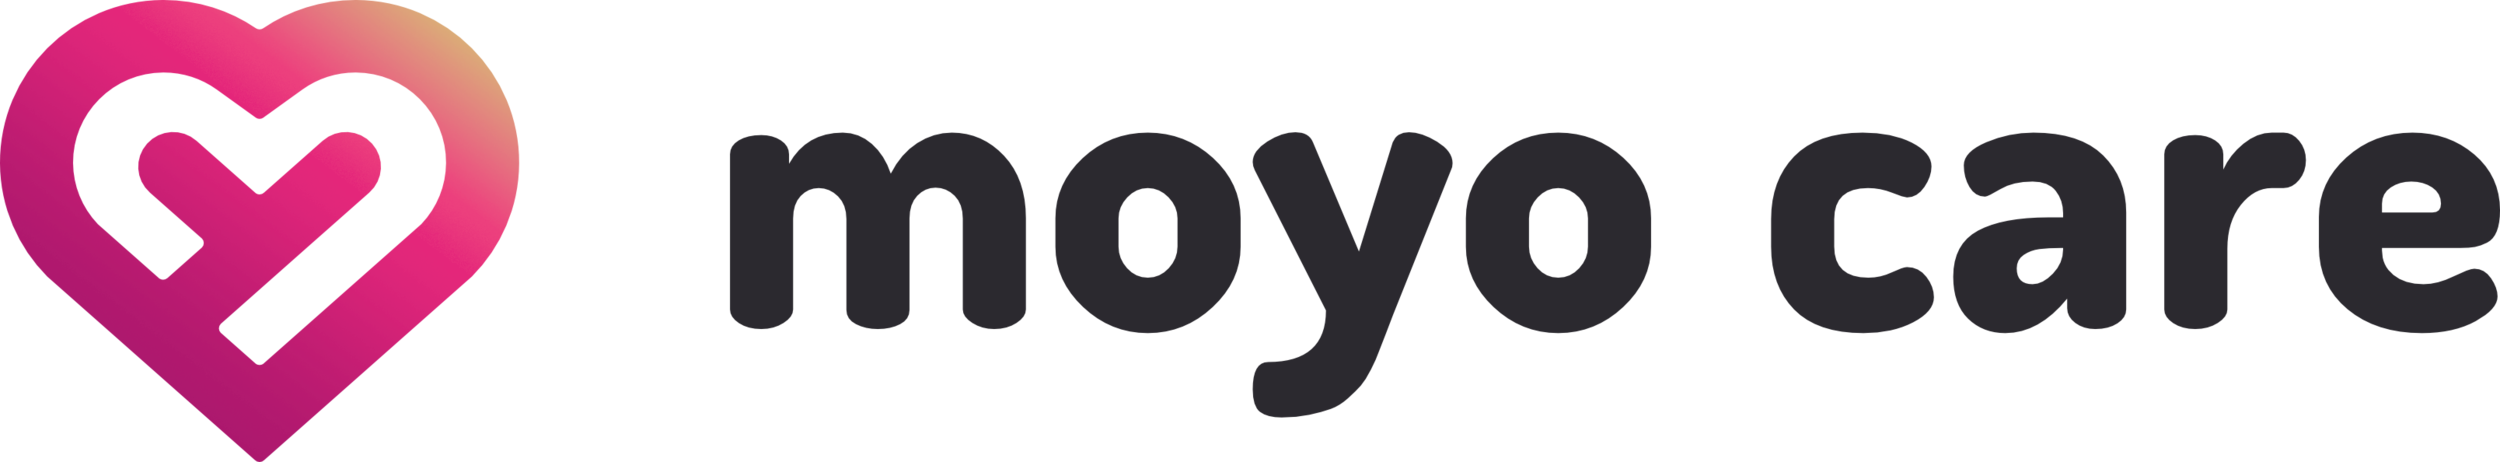 Moyo Care